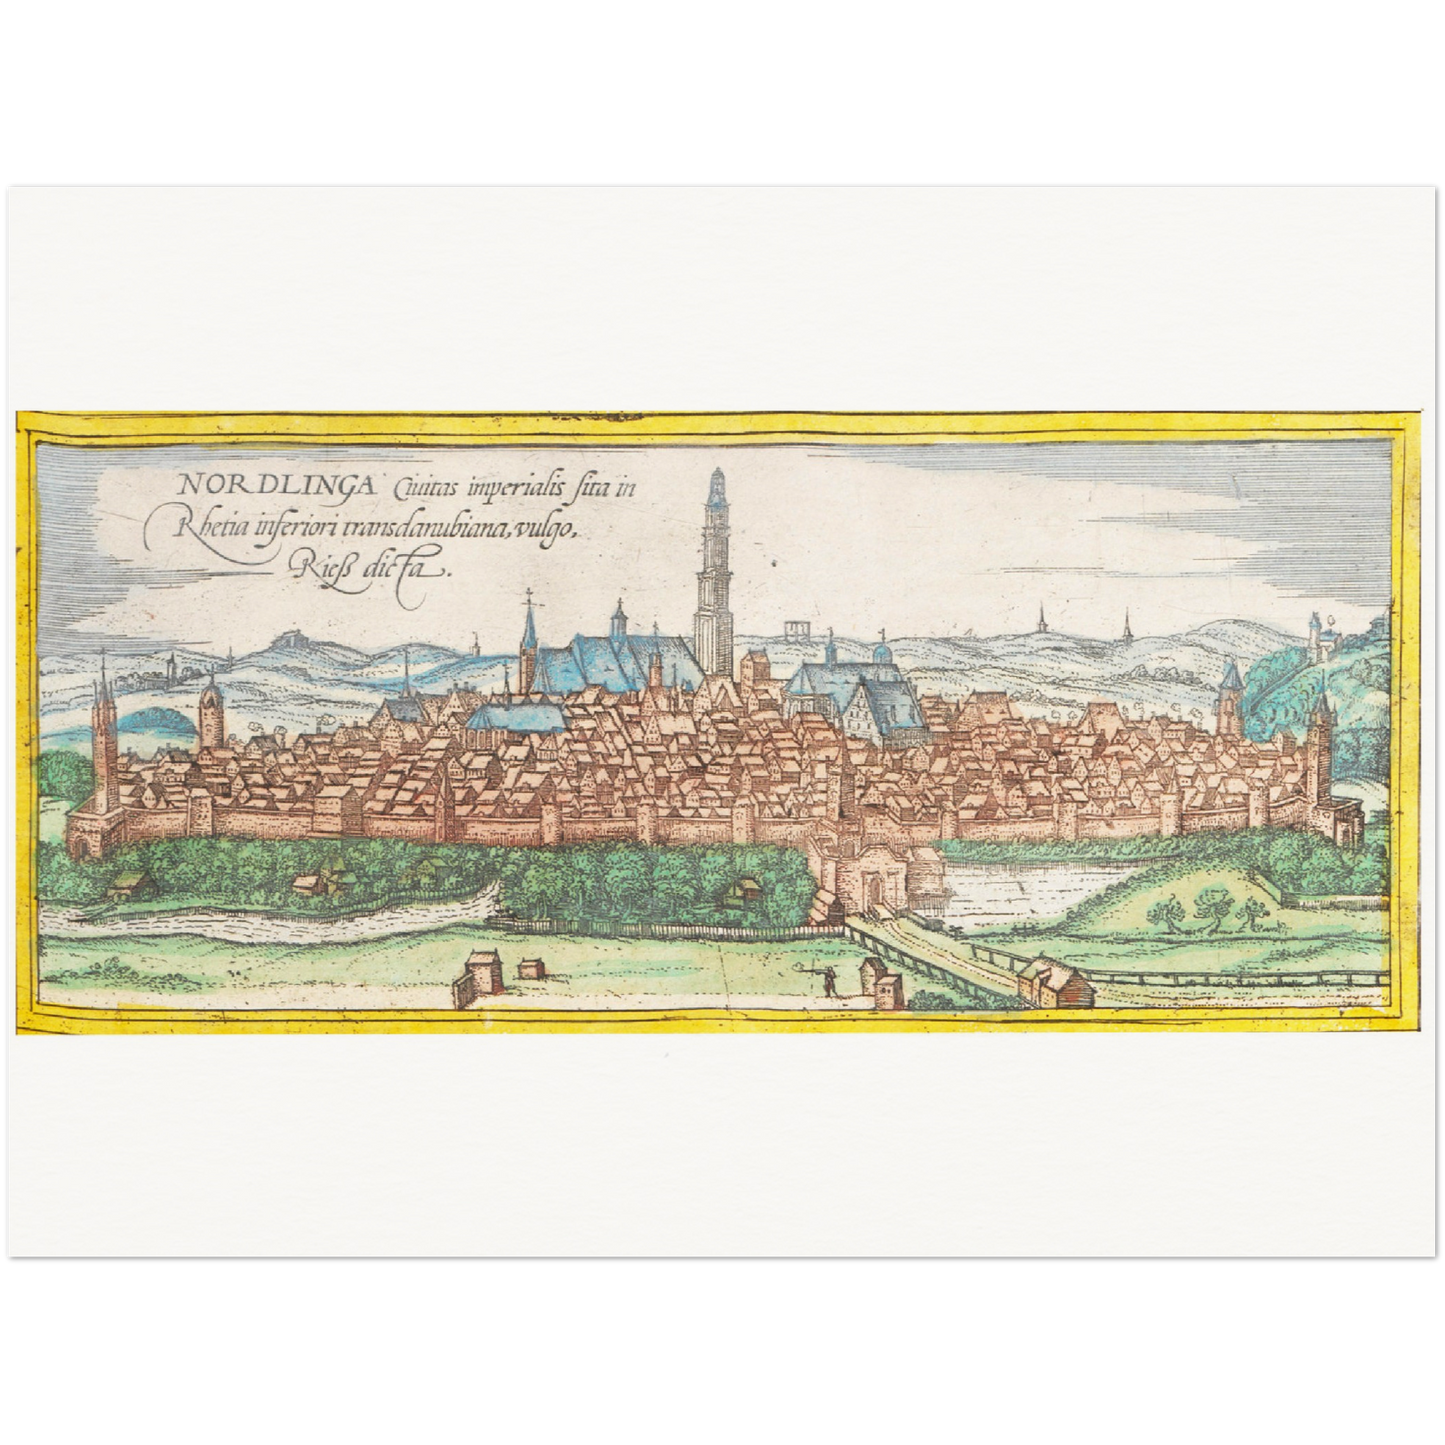 Historische Stadtansicht Nördlingen um 1570